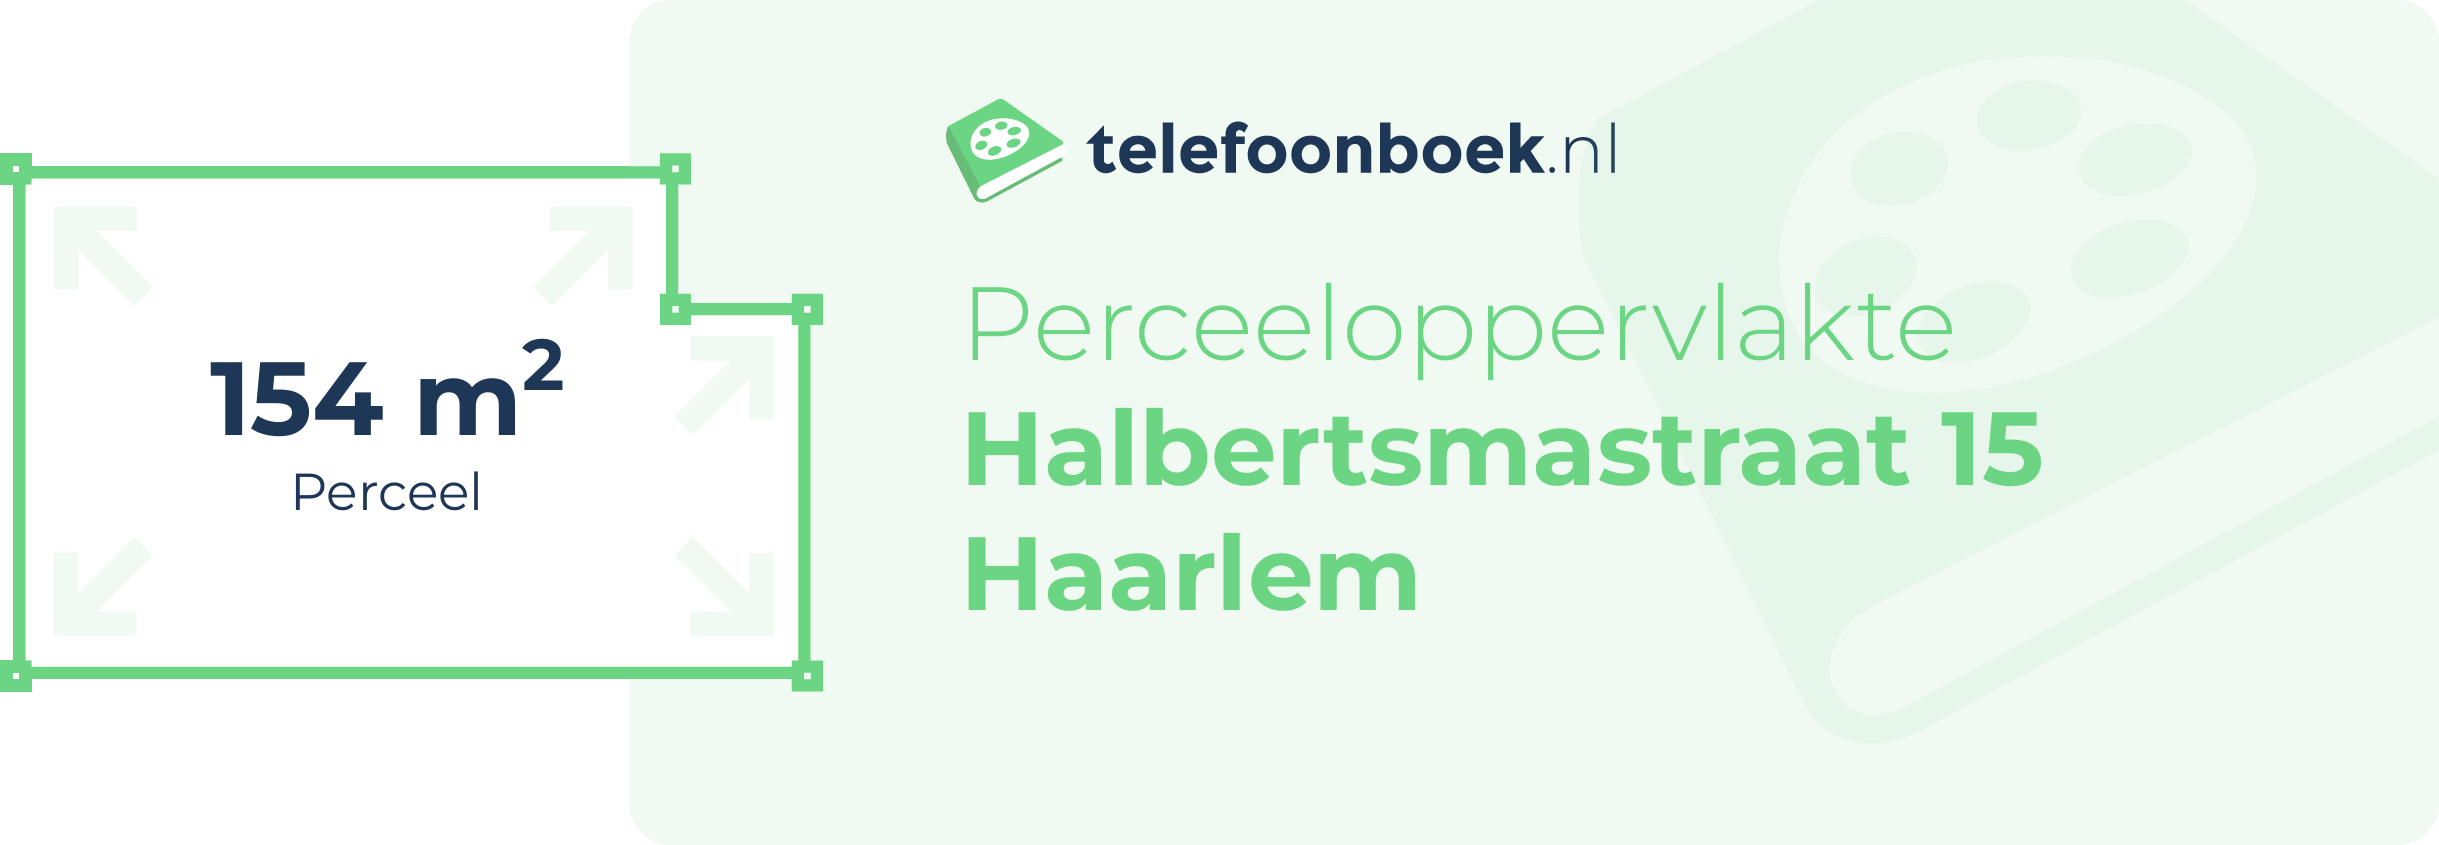 Perceeloppervlakte Halbertsmastraat 15 Haarlem